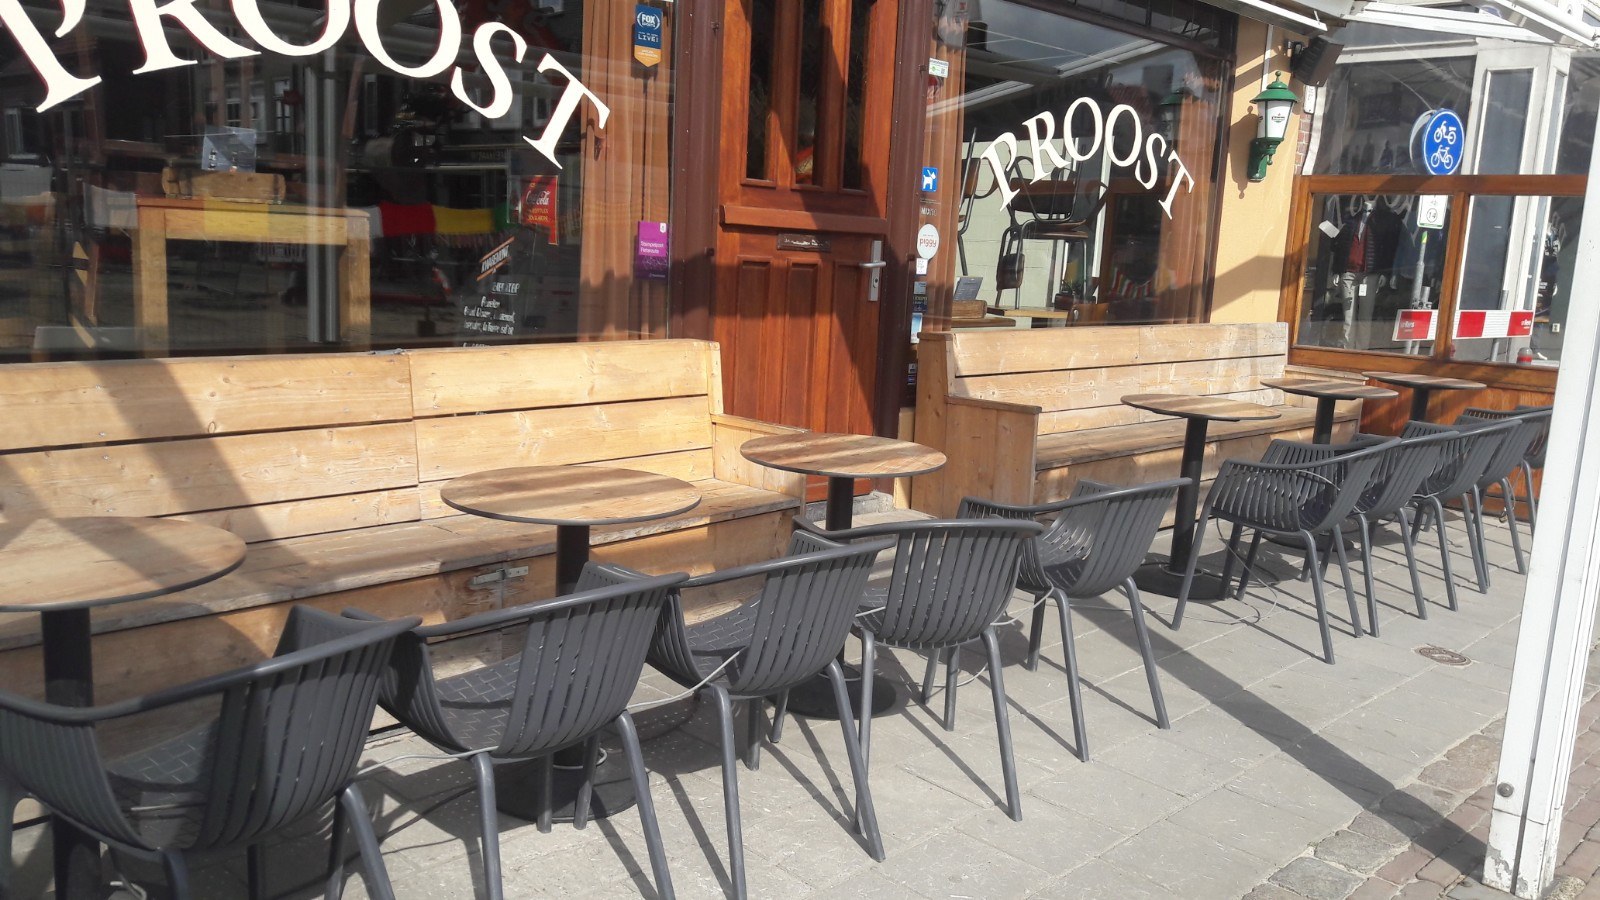 Archieffoto van café Proost in de zon, met lege terrassen vanwege de lockdown.